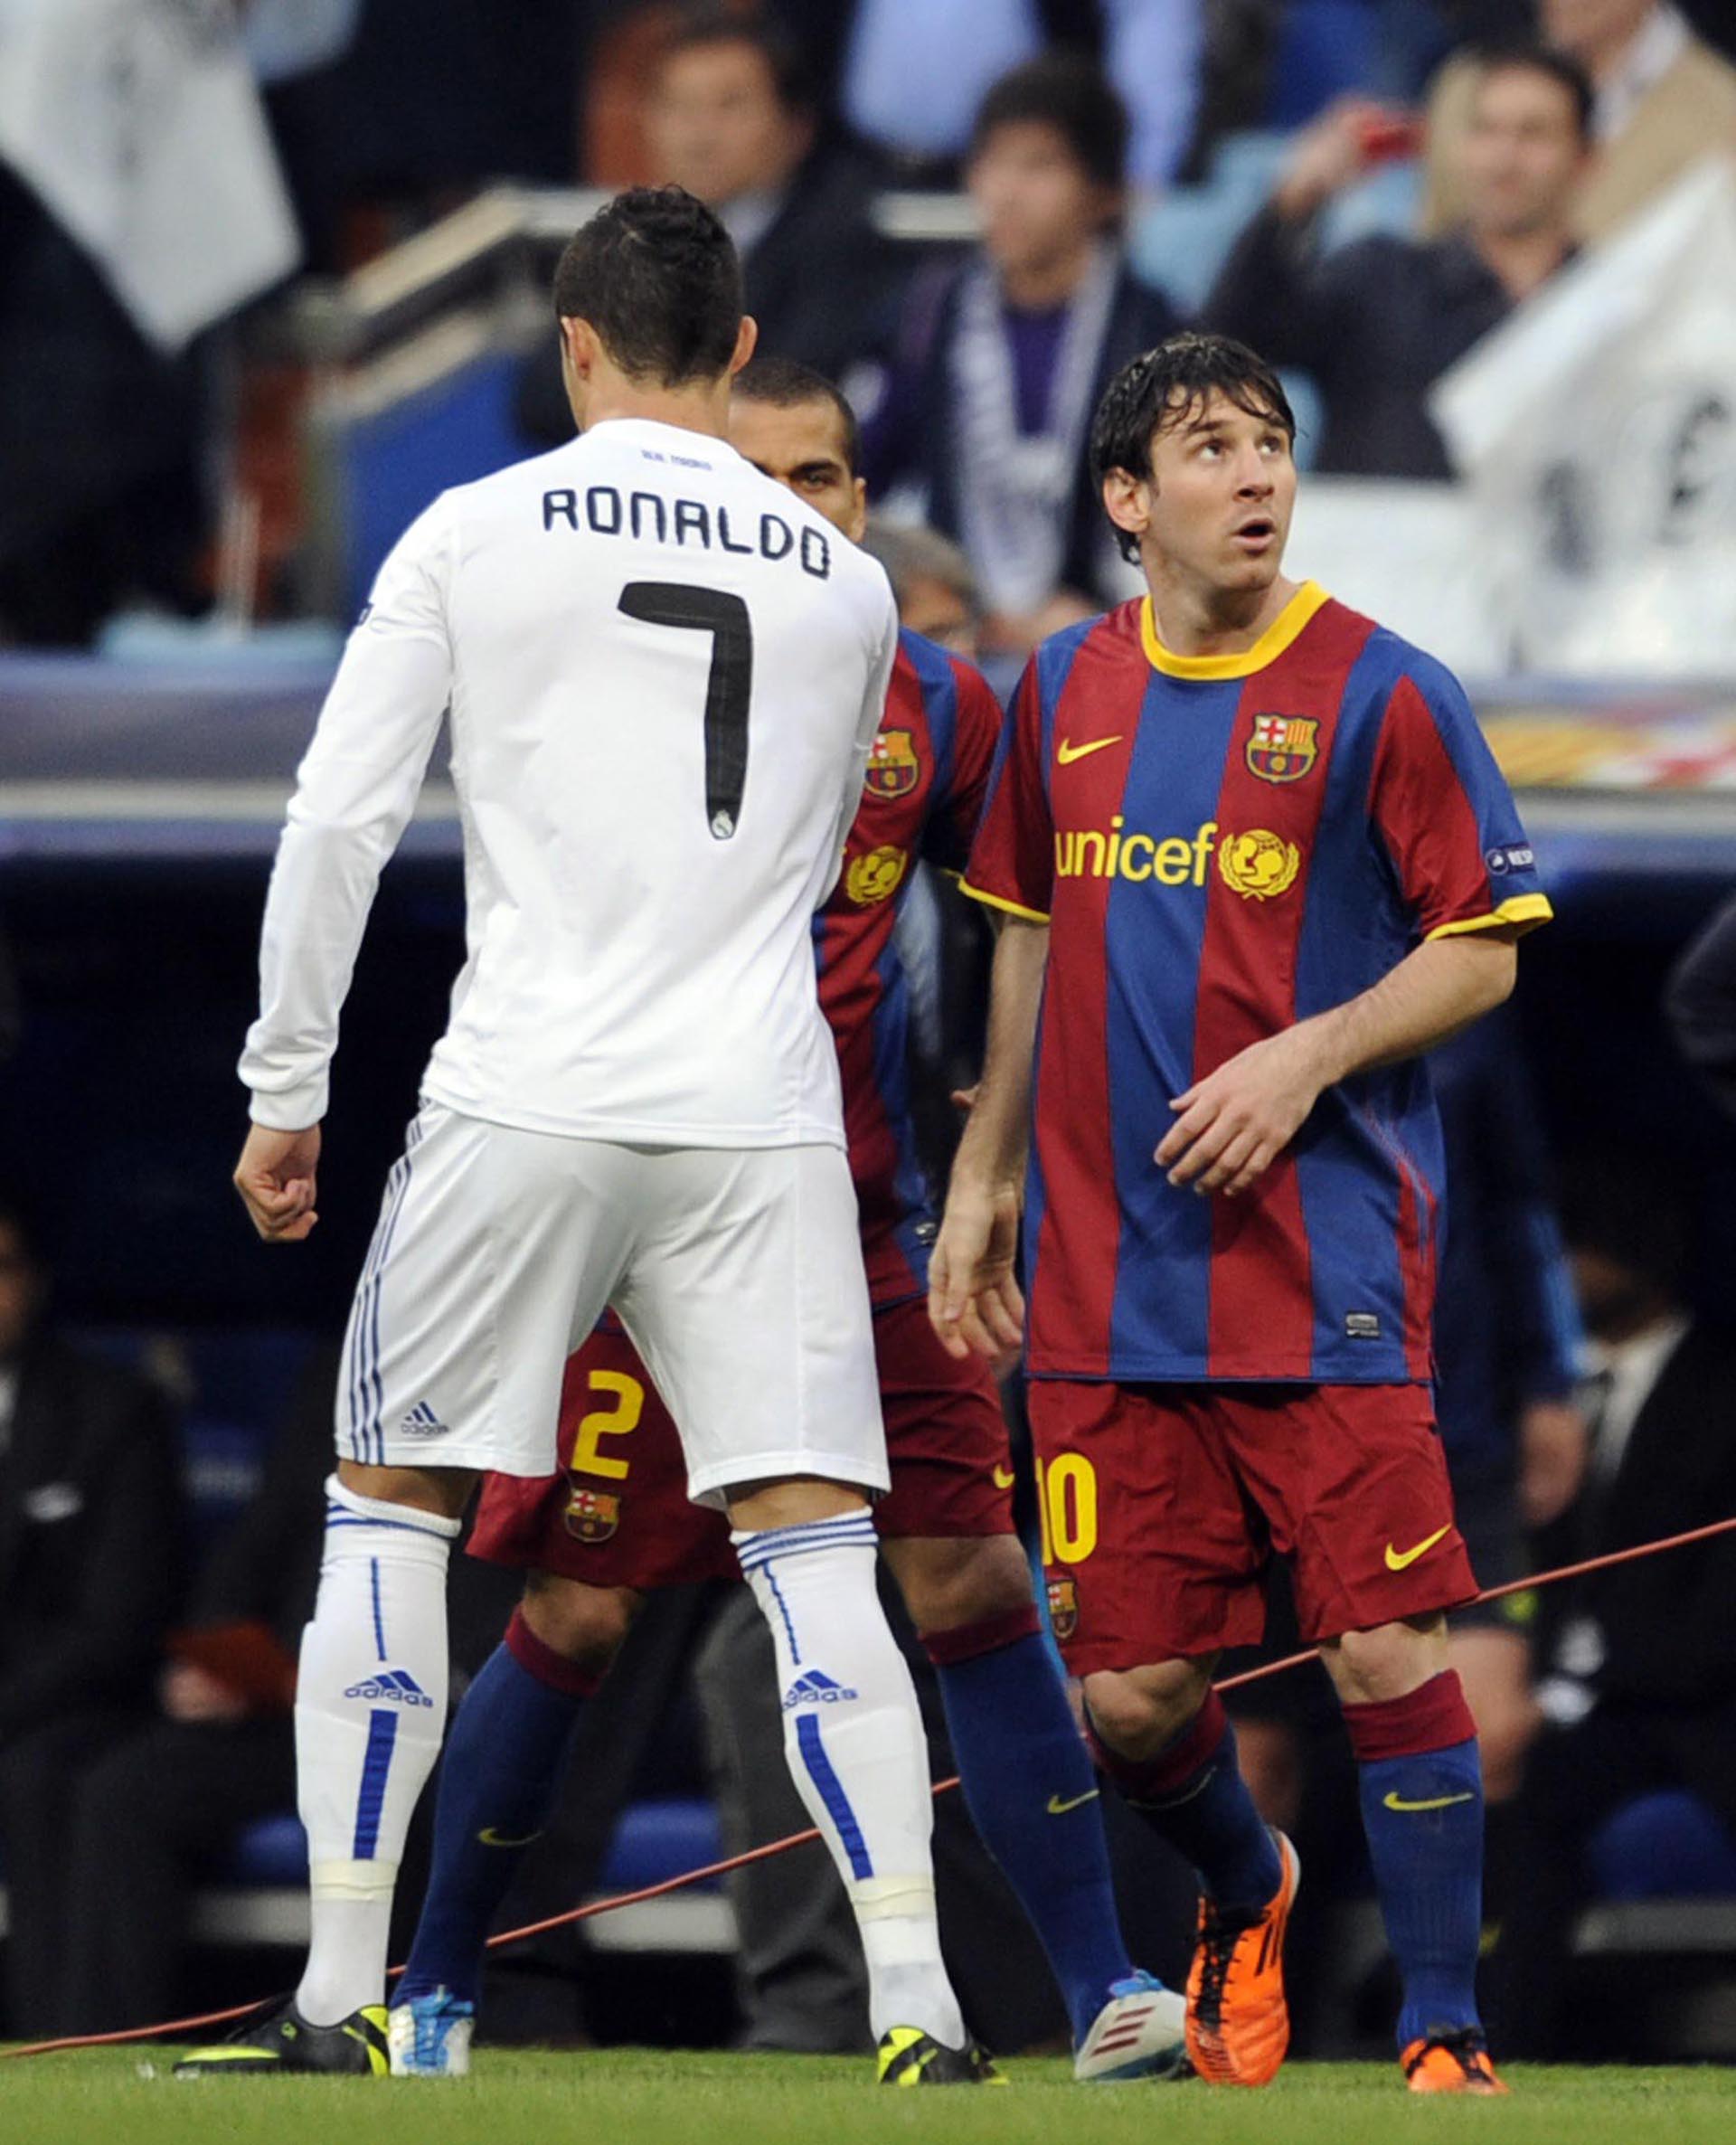 La verdad detrás de la histórica foto de Lionel Messi y Cristiano